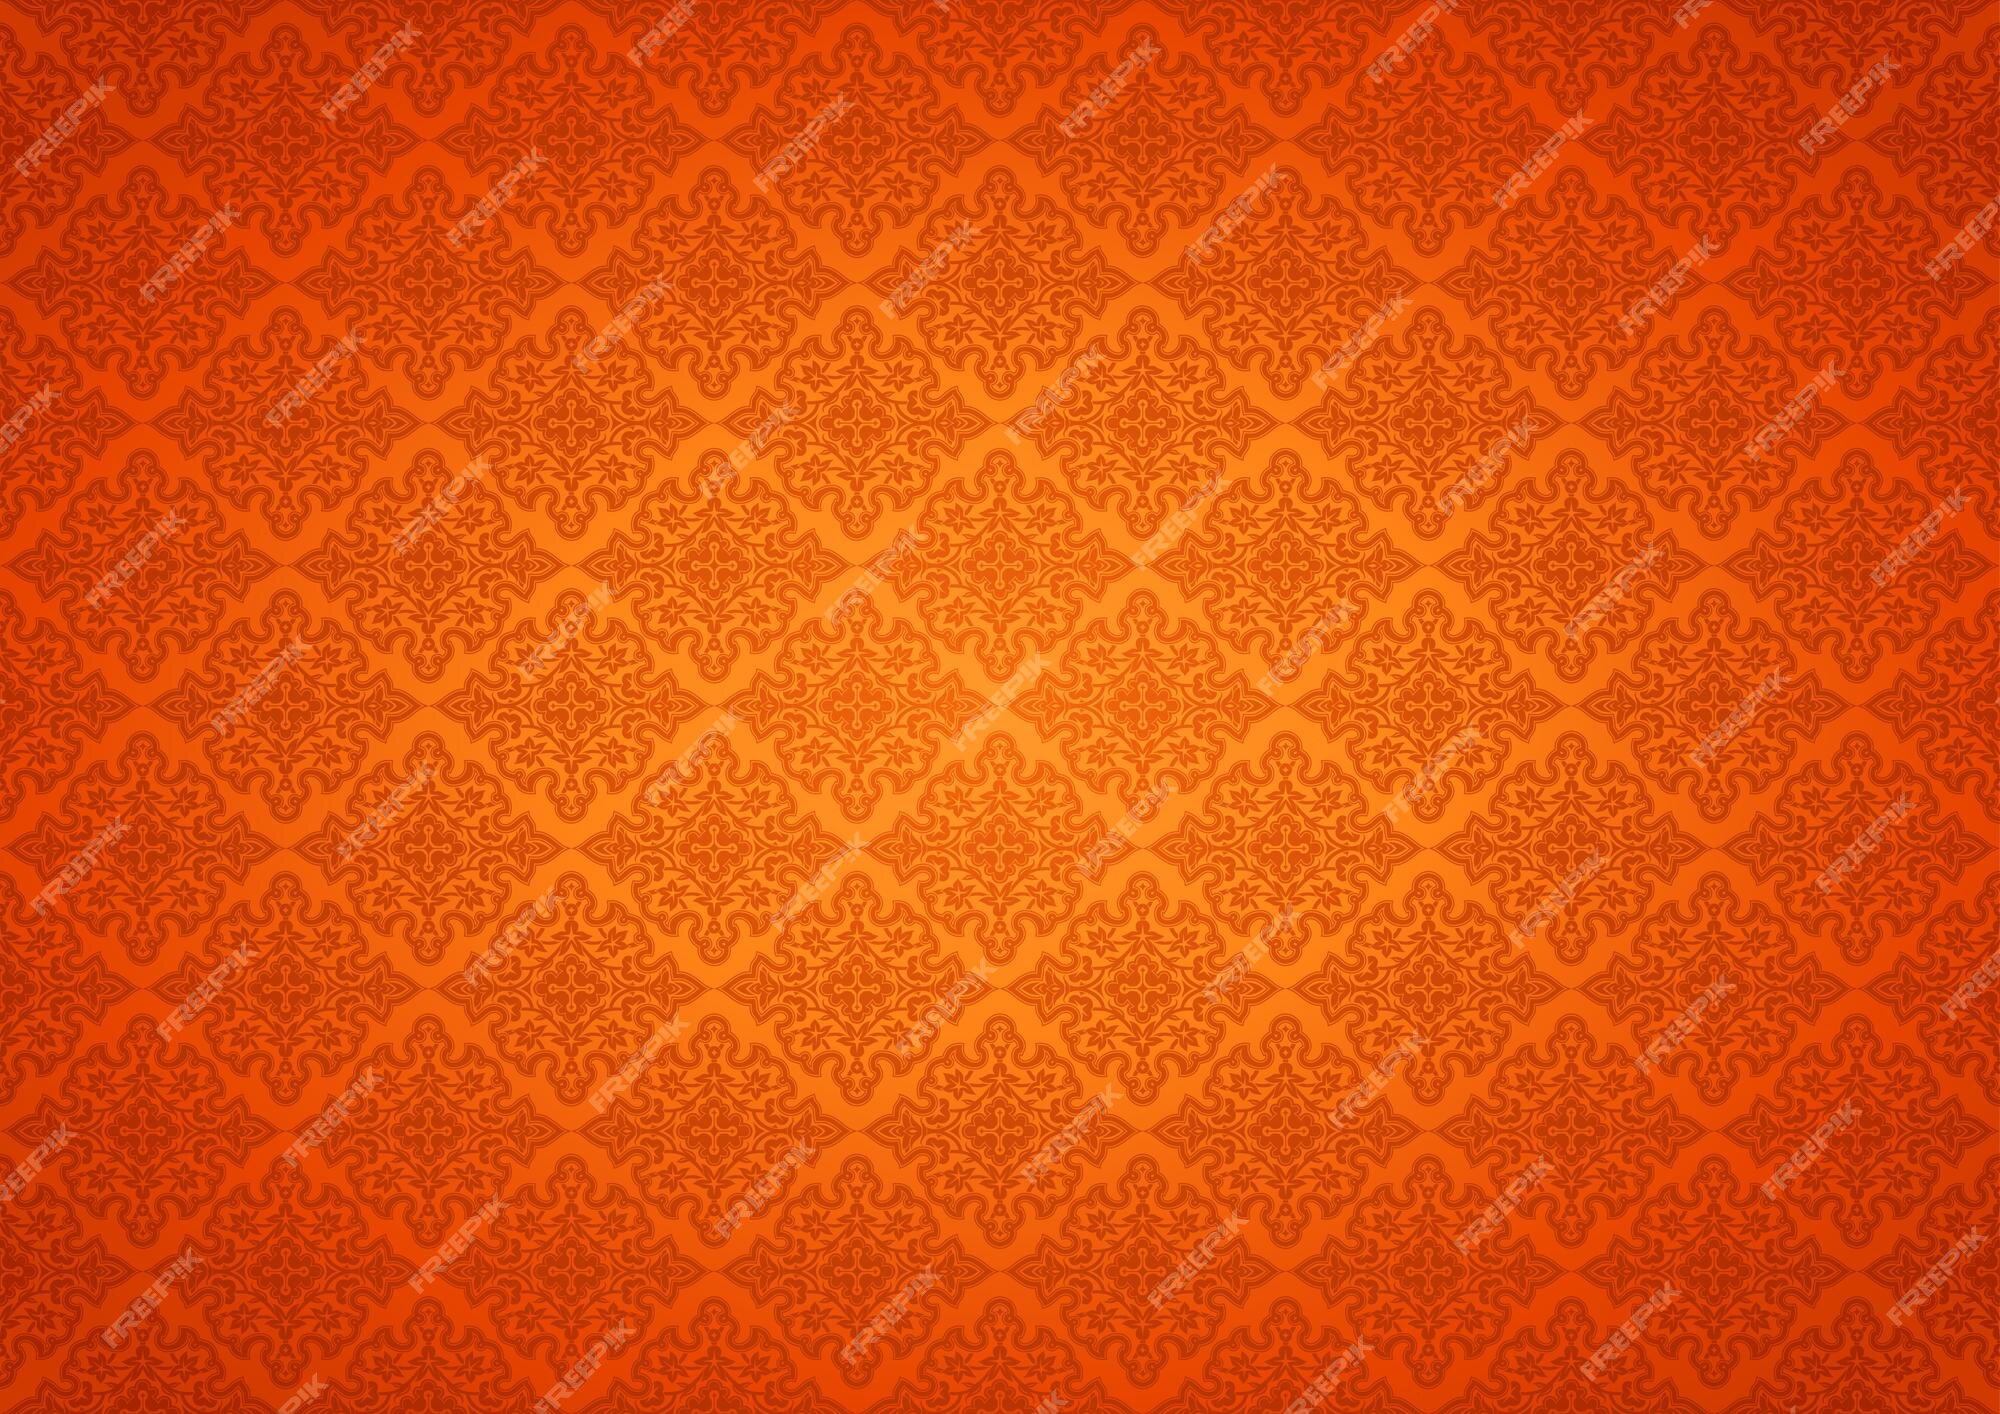 Premium Vector | Orange oriental vintage background là một bức tranh châu Á cổ điển, với họa tiết ngộ nghĩnh và phong cách hoa văn tinh tế. Mang đậm chất độc đáo của văn hóa Á Đông, hình nền này sẽ trở thành món đồ trang trí độc đáo cho ngôi nhà của bạn.